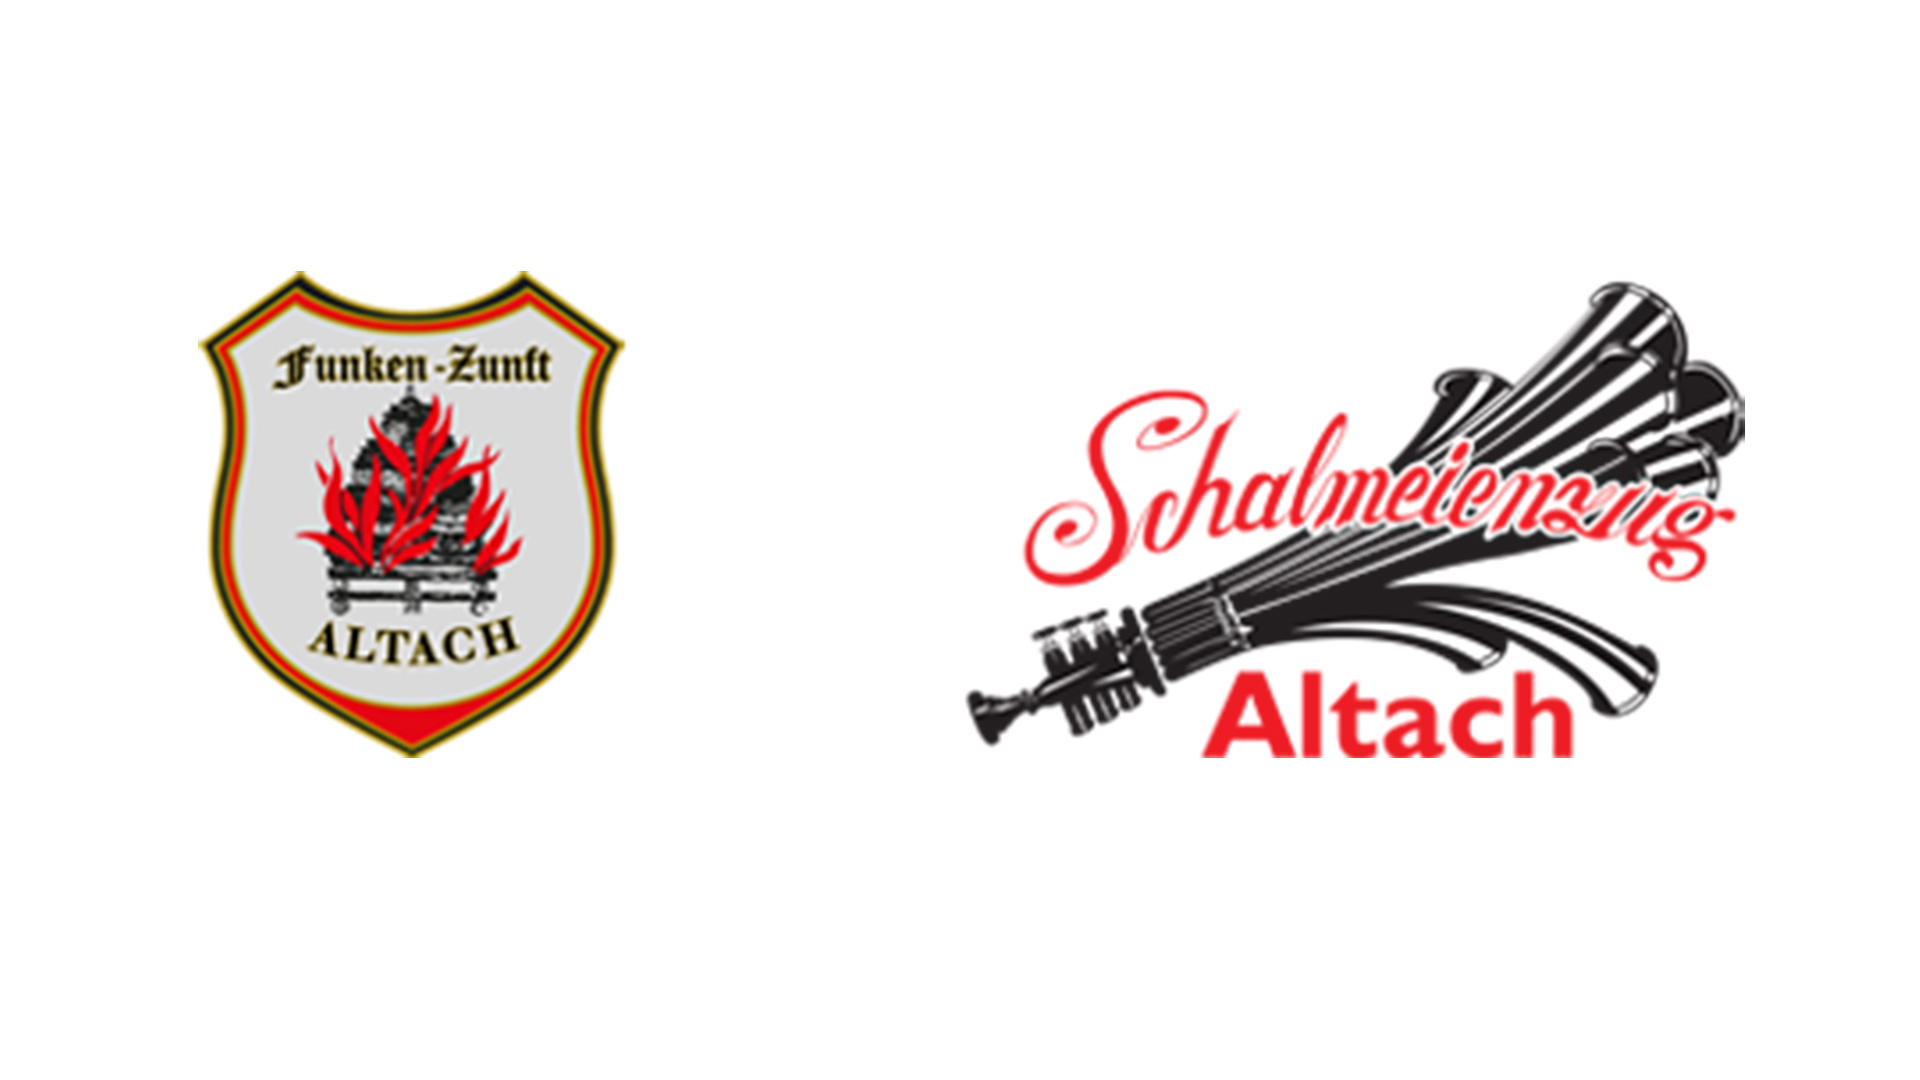 Funkenzunft und Schameien Altach Logo